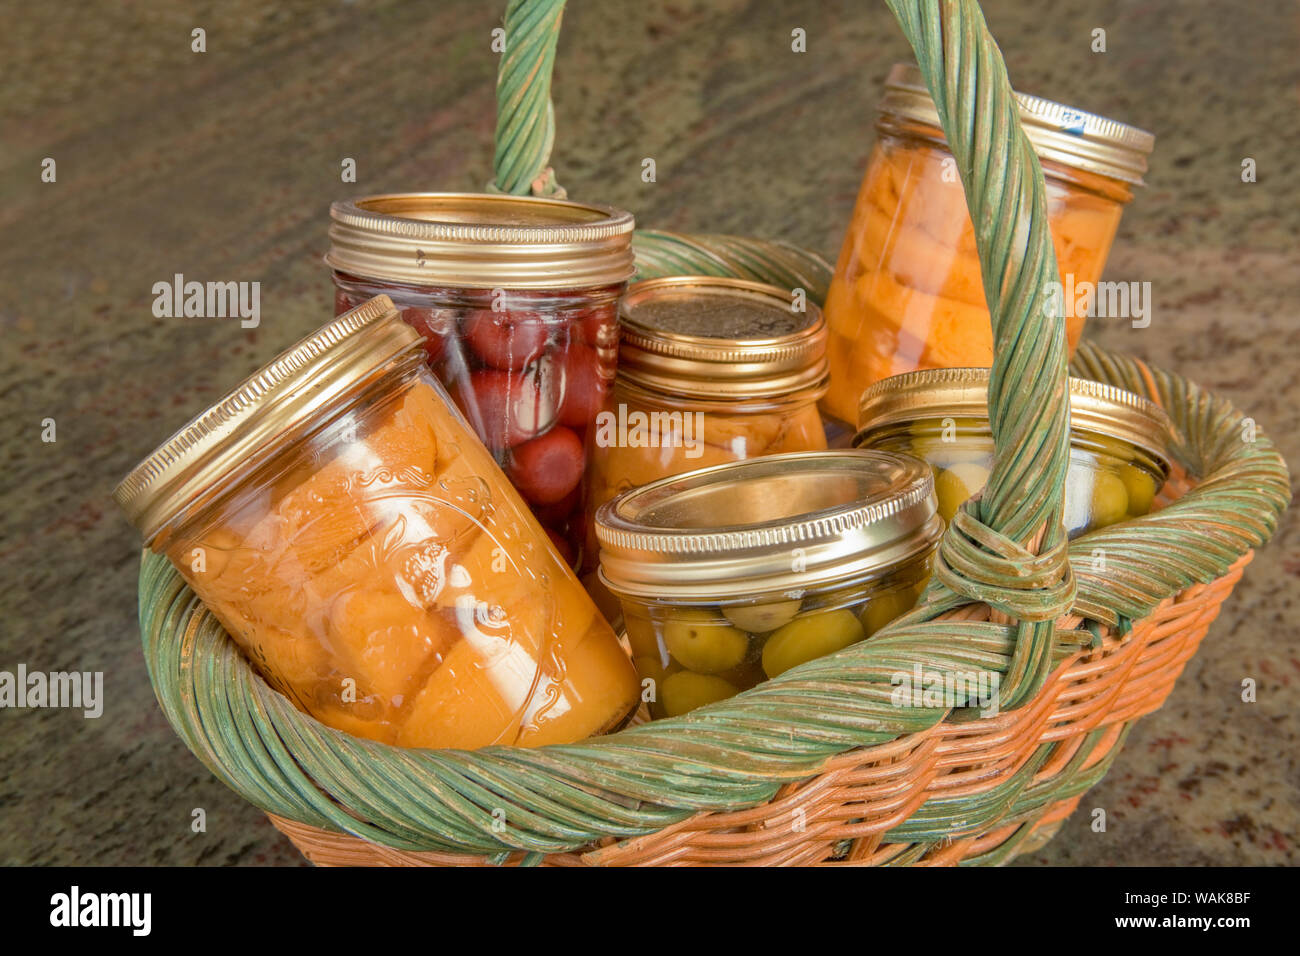 Weidenkorb von zu Hause Konserven (Pfirsiche, Oliven und Kirschen) auf einem Granit Arbeitsplatte in der Küche. Stockfoto